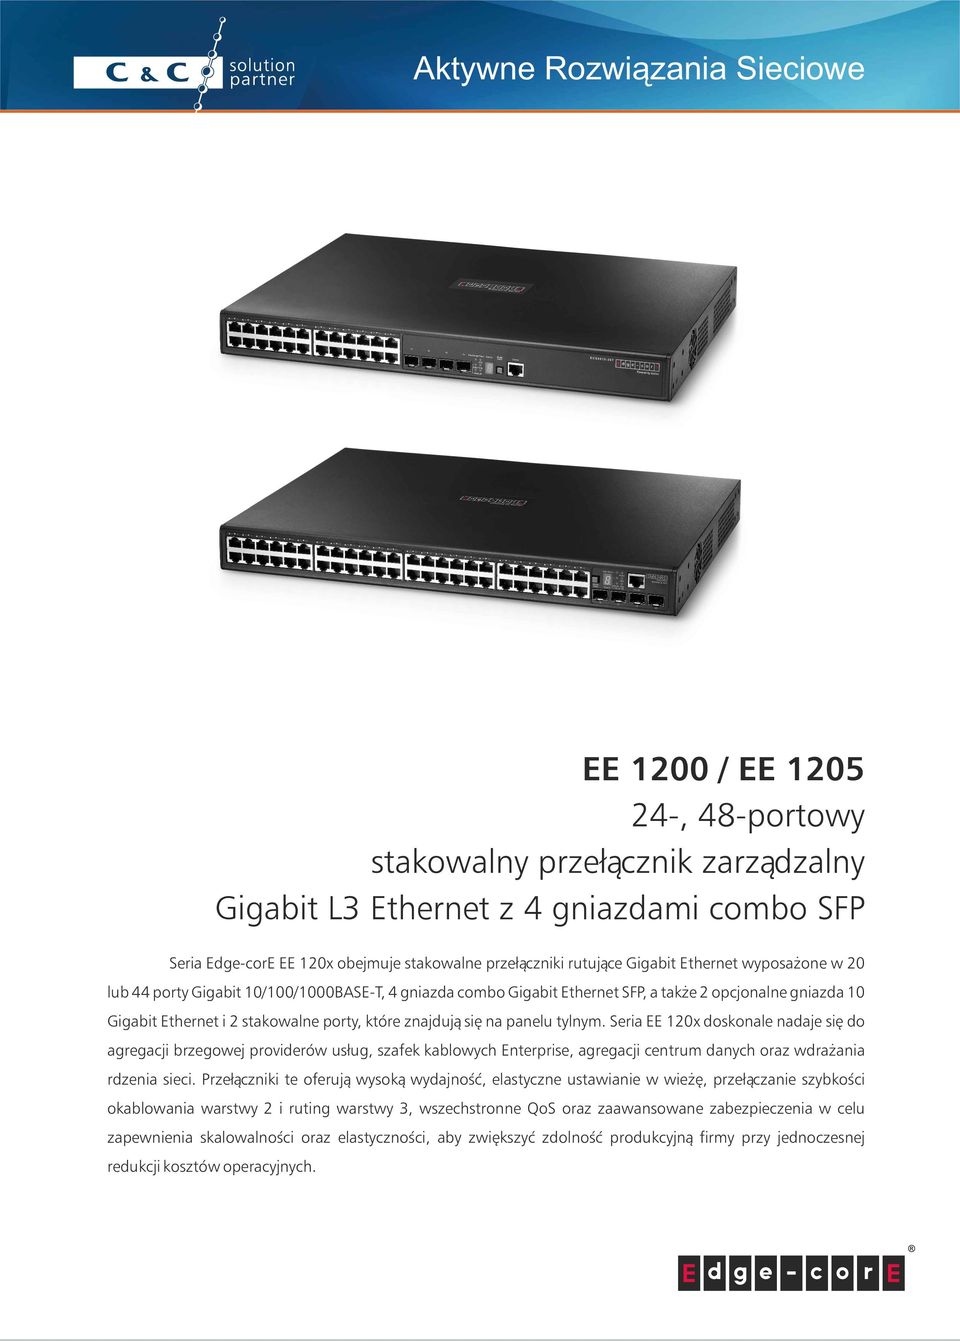 tylnym. Seria EE 120x doskonale nadaje się do agregacji brzegowej providerów usług, szafek kablowych Enterprise, agregacji centrum danych oraz wdrażania rdzenia sieci.